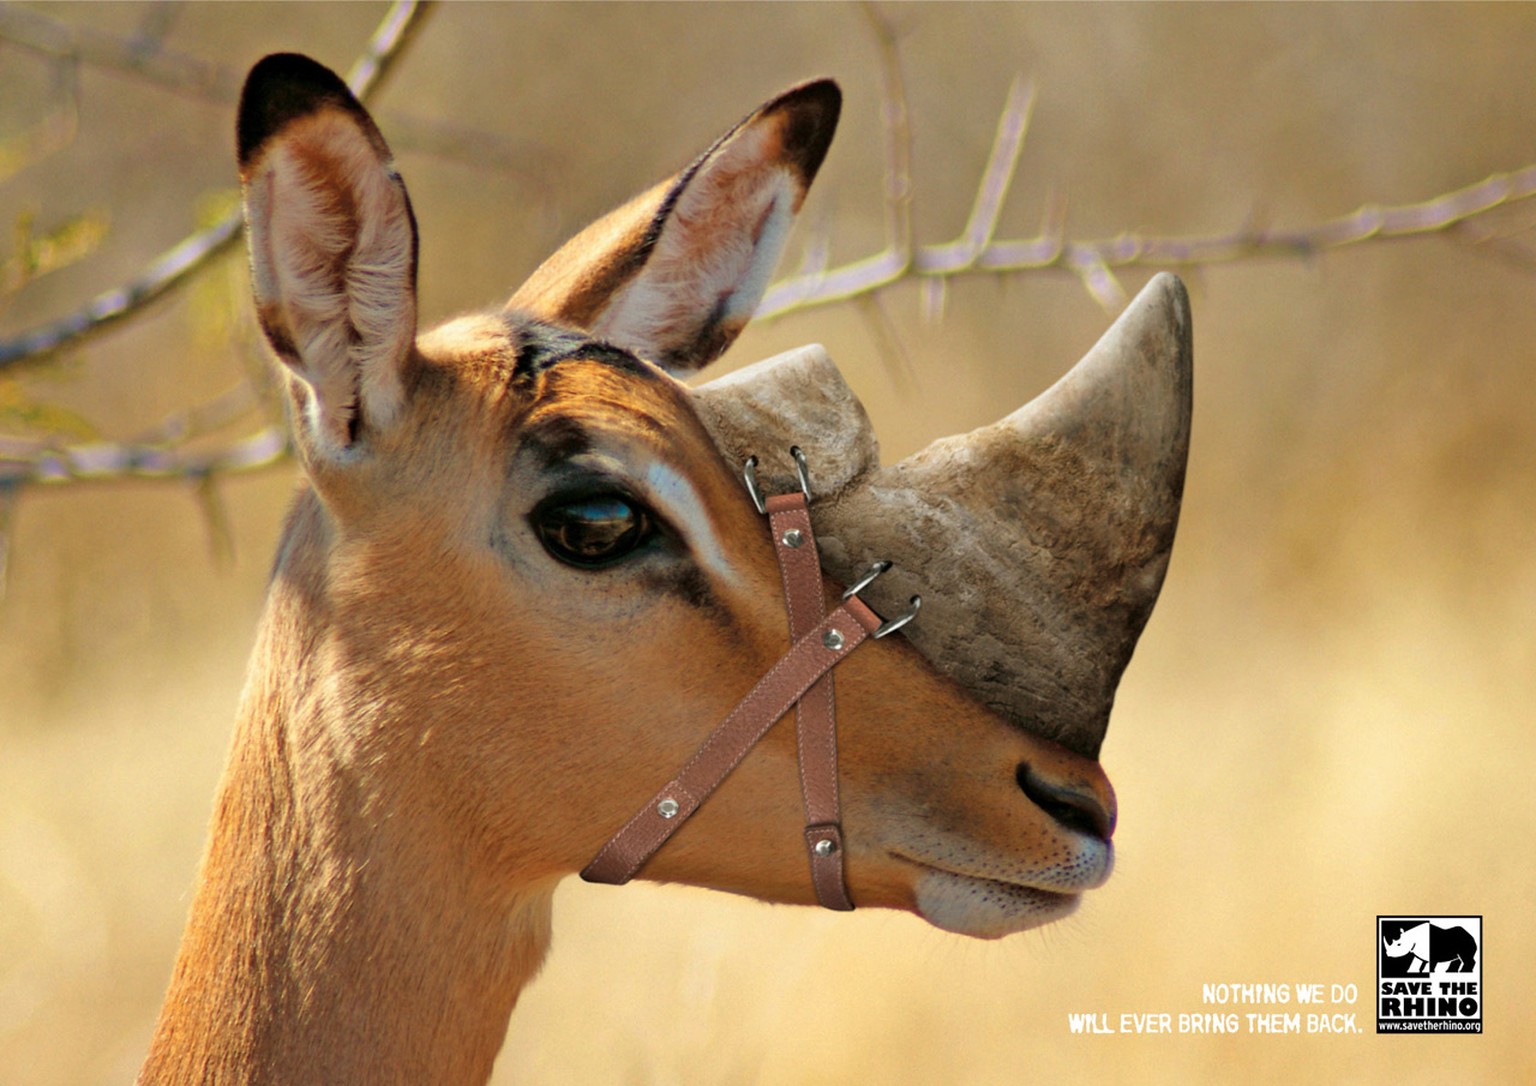 Um auf das Aussterben der Nashörner aufmerksam zu machen, hat der südafrikanische Tierschutzverein «Save The Rhino» eine Antilope, ein Zebra und eine Giraffe «gehörnt».&nbsp;